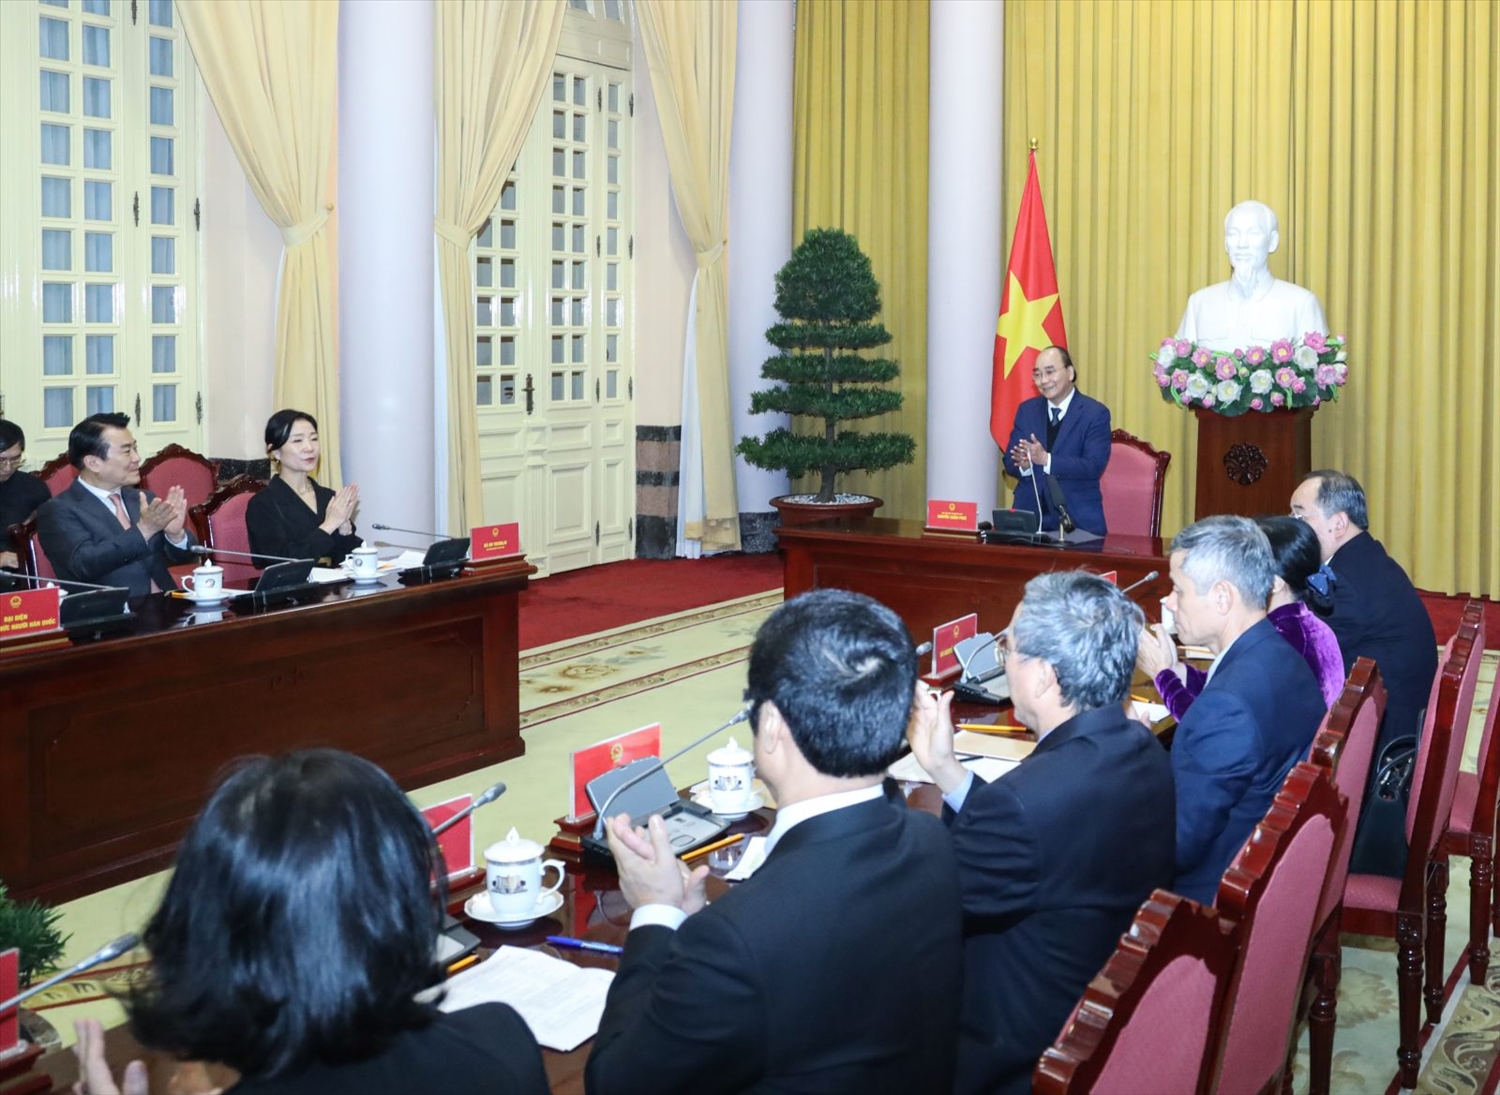 Chủ tịch nước Nguyễn Xuân Phúc tiếp Đoàn lãnh đạo các tổ chức đại diện cho cộng đồng người Hàn Quốc sinh sống và làm việc tại Việt Nam. Ảnh: VPCTN